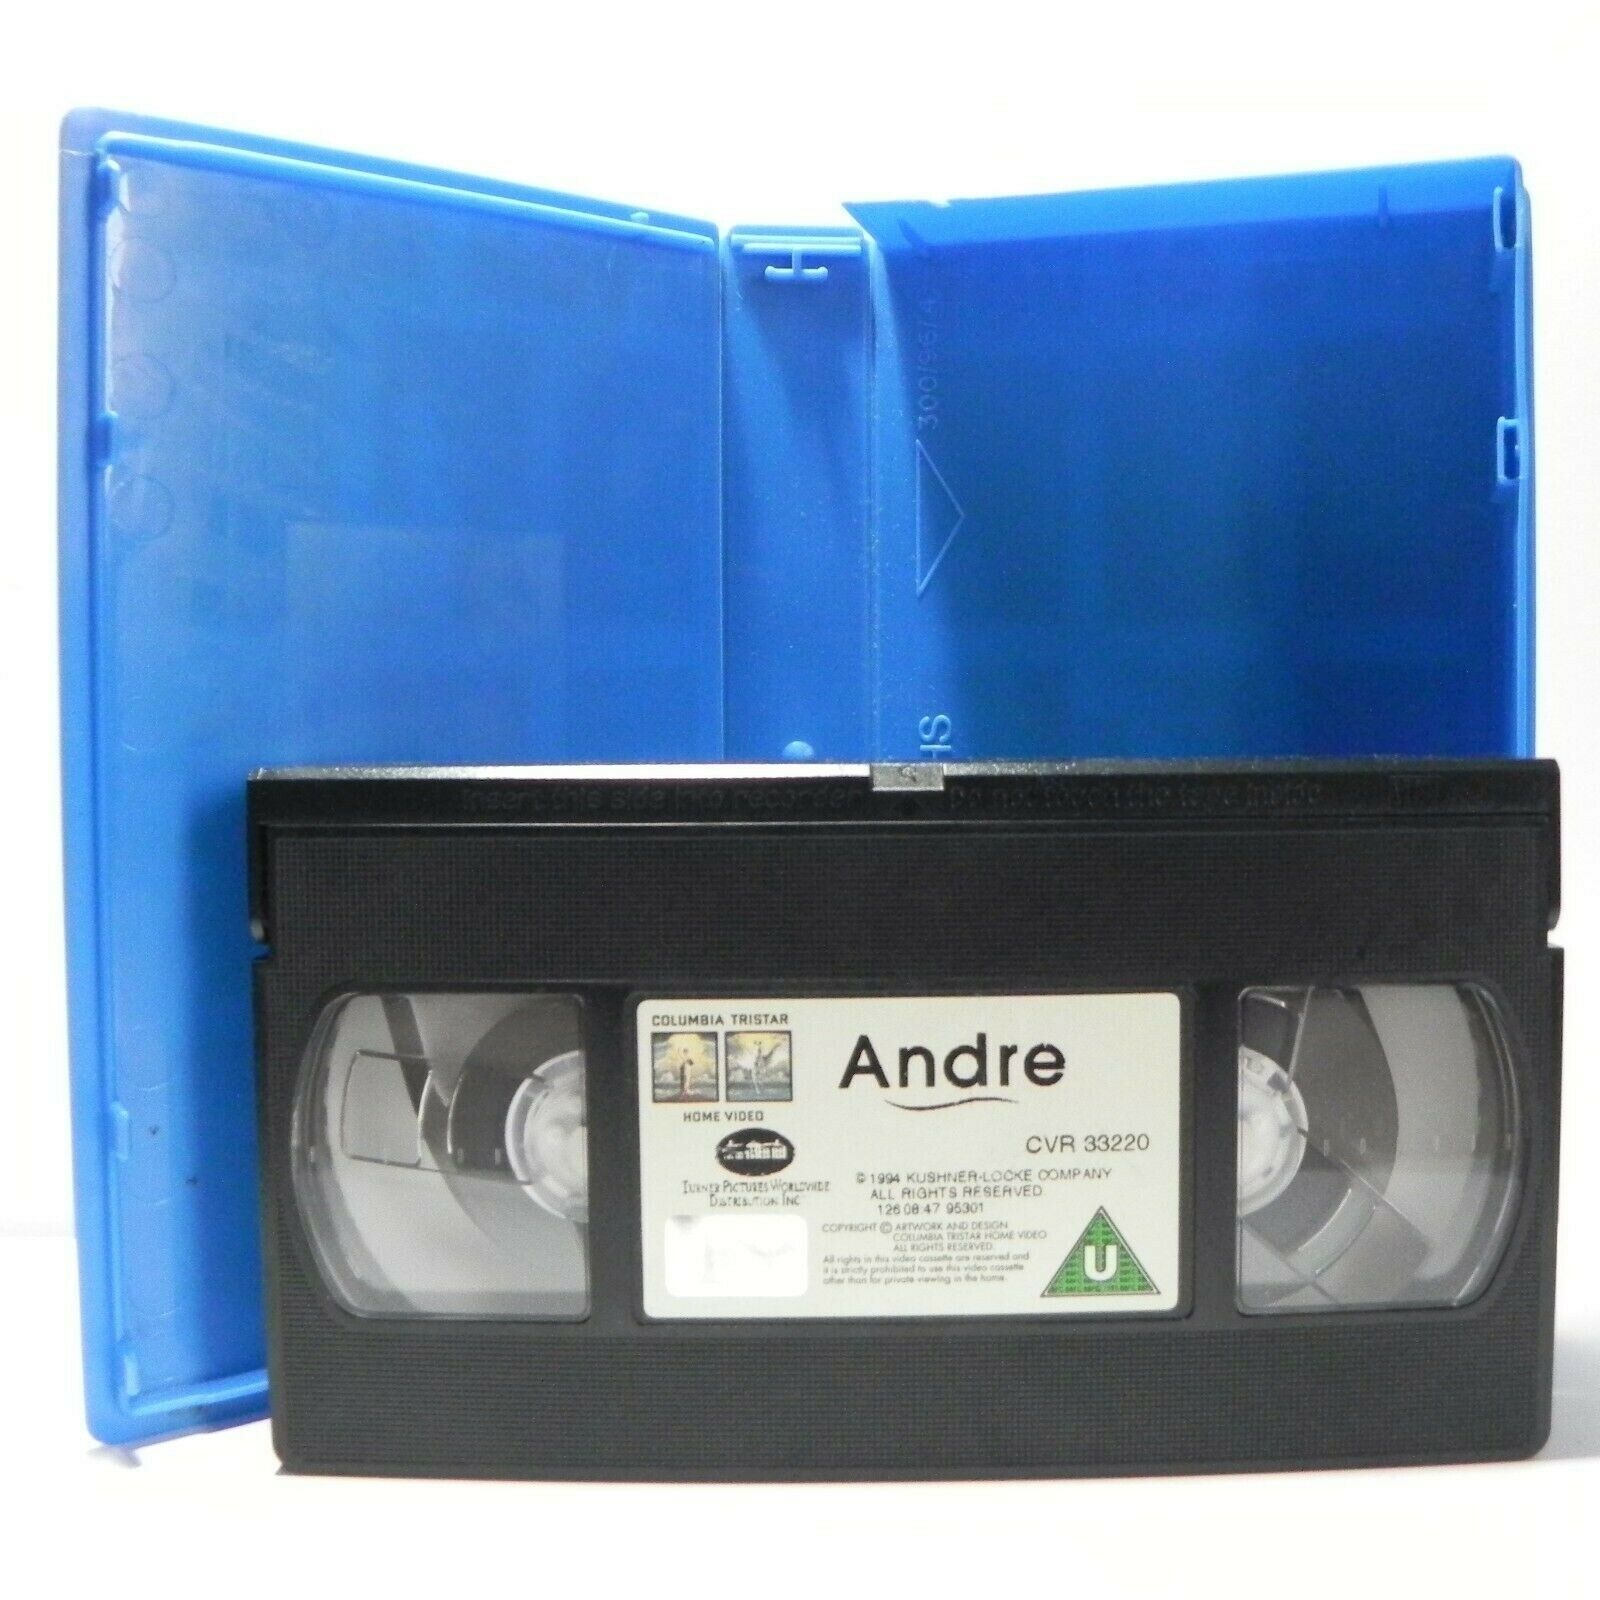 Andre - Based On True Story - Heartwarming Film - Family - Children's - Pal VHS-